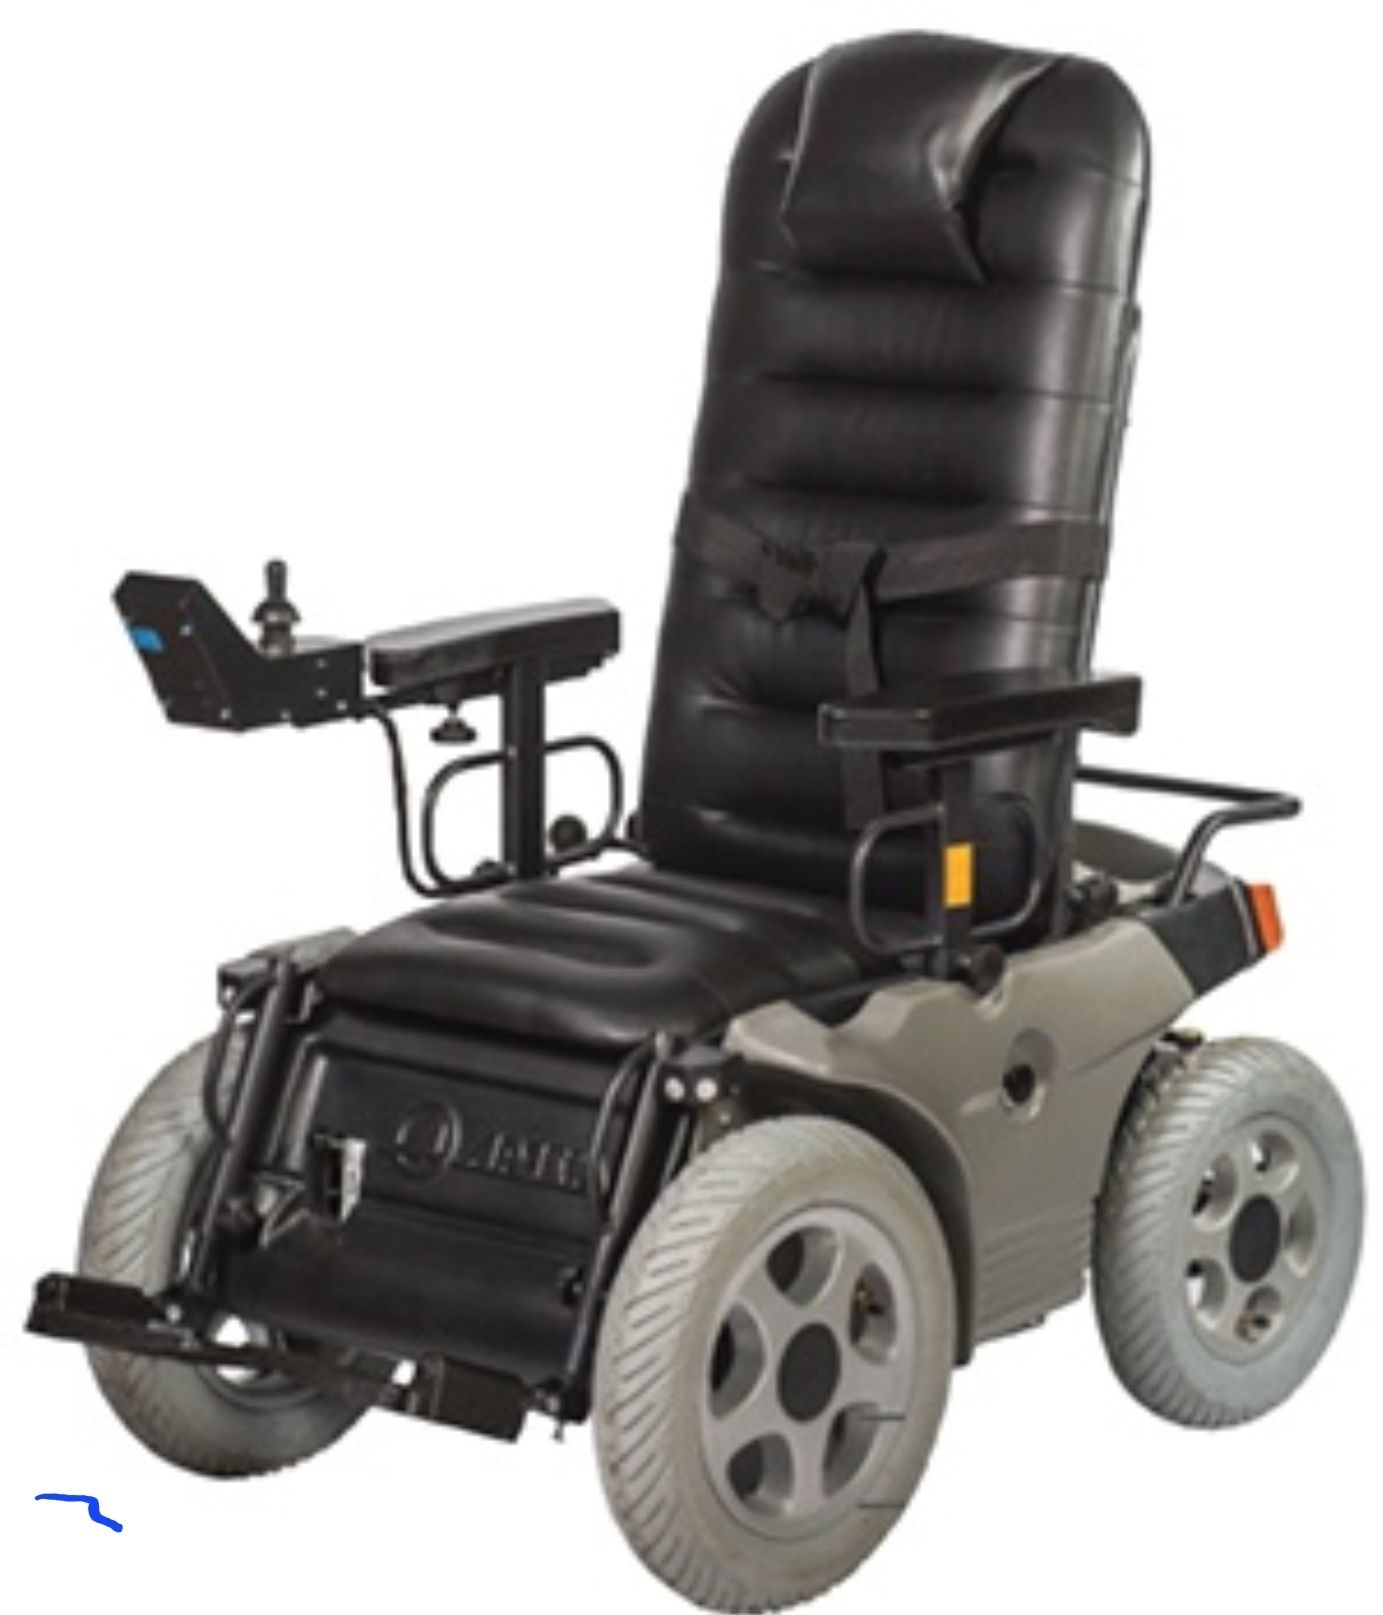 Кресло-коляска с электроприводом модель 220
Назначение кресло-коляска